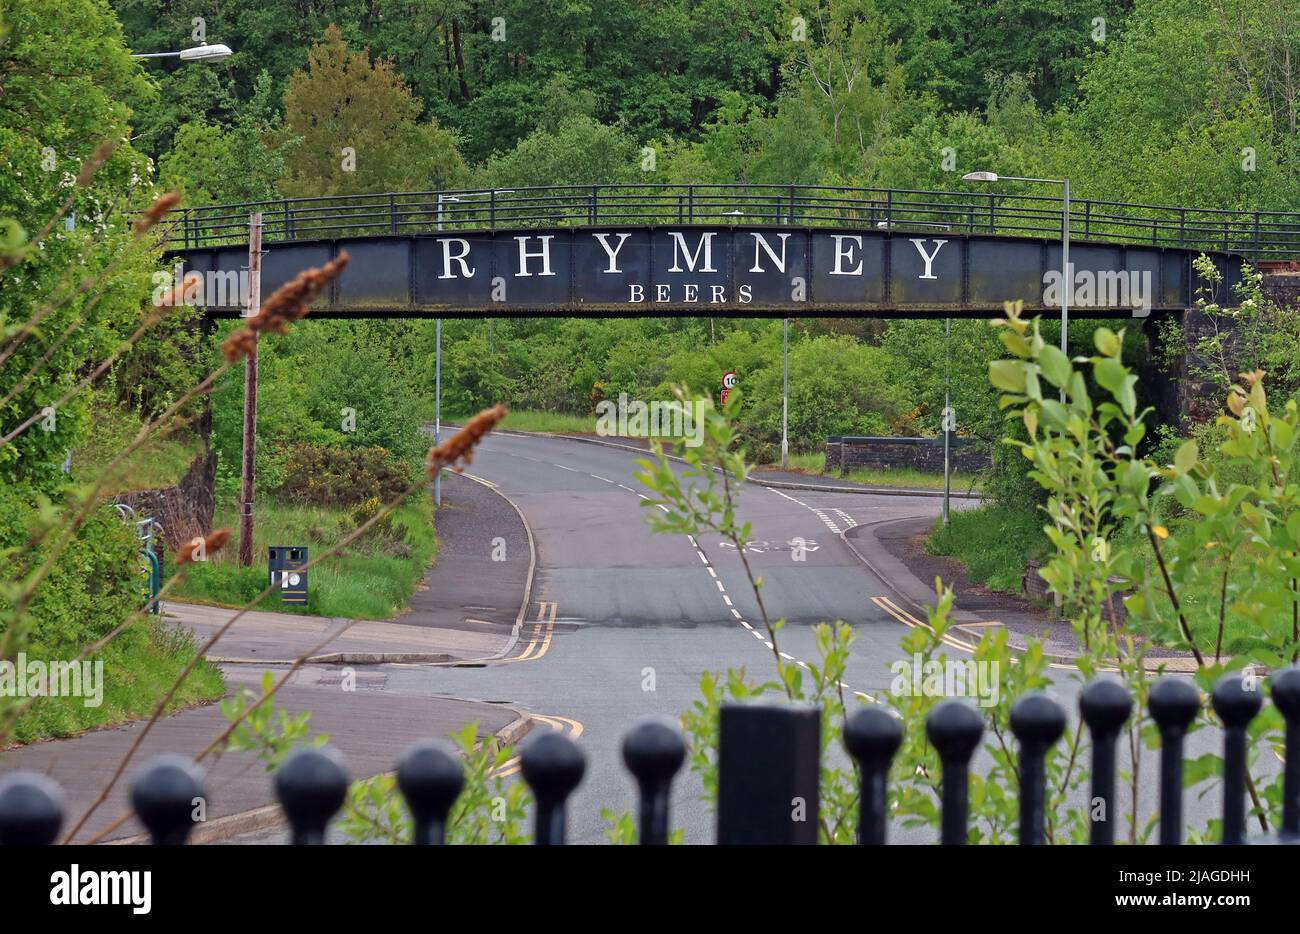 Rhymney Brewery Beers -Thomas Industrial Estate, Gilchrist, Blaenavon, Pontypool , South Wales, UK, NP4 9RL Stock Photo